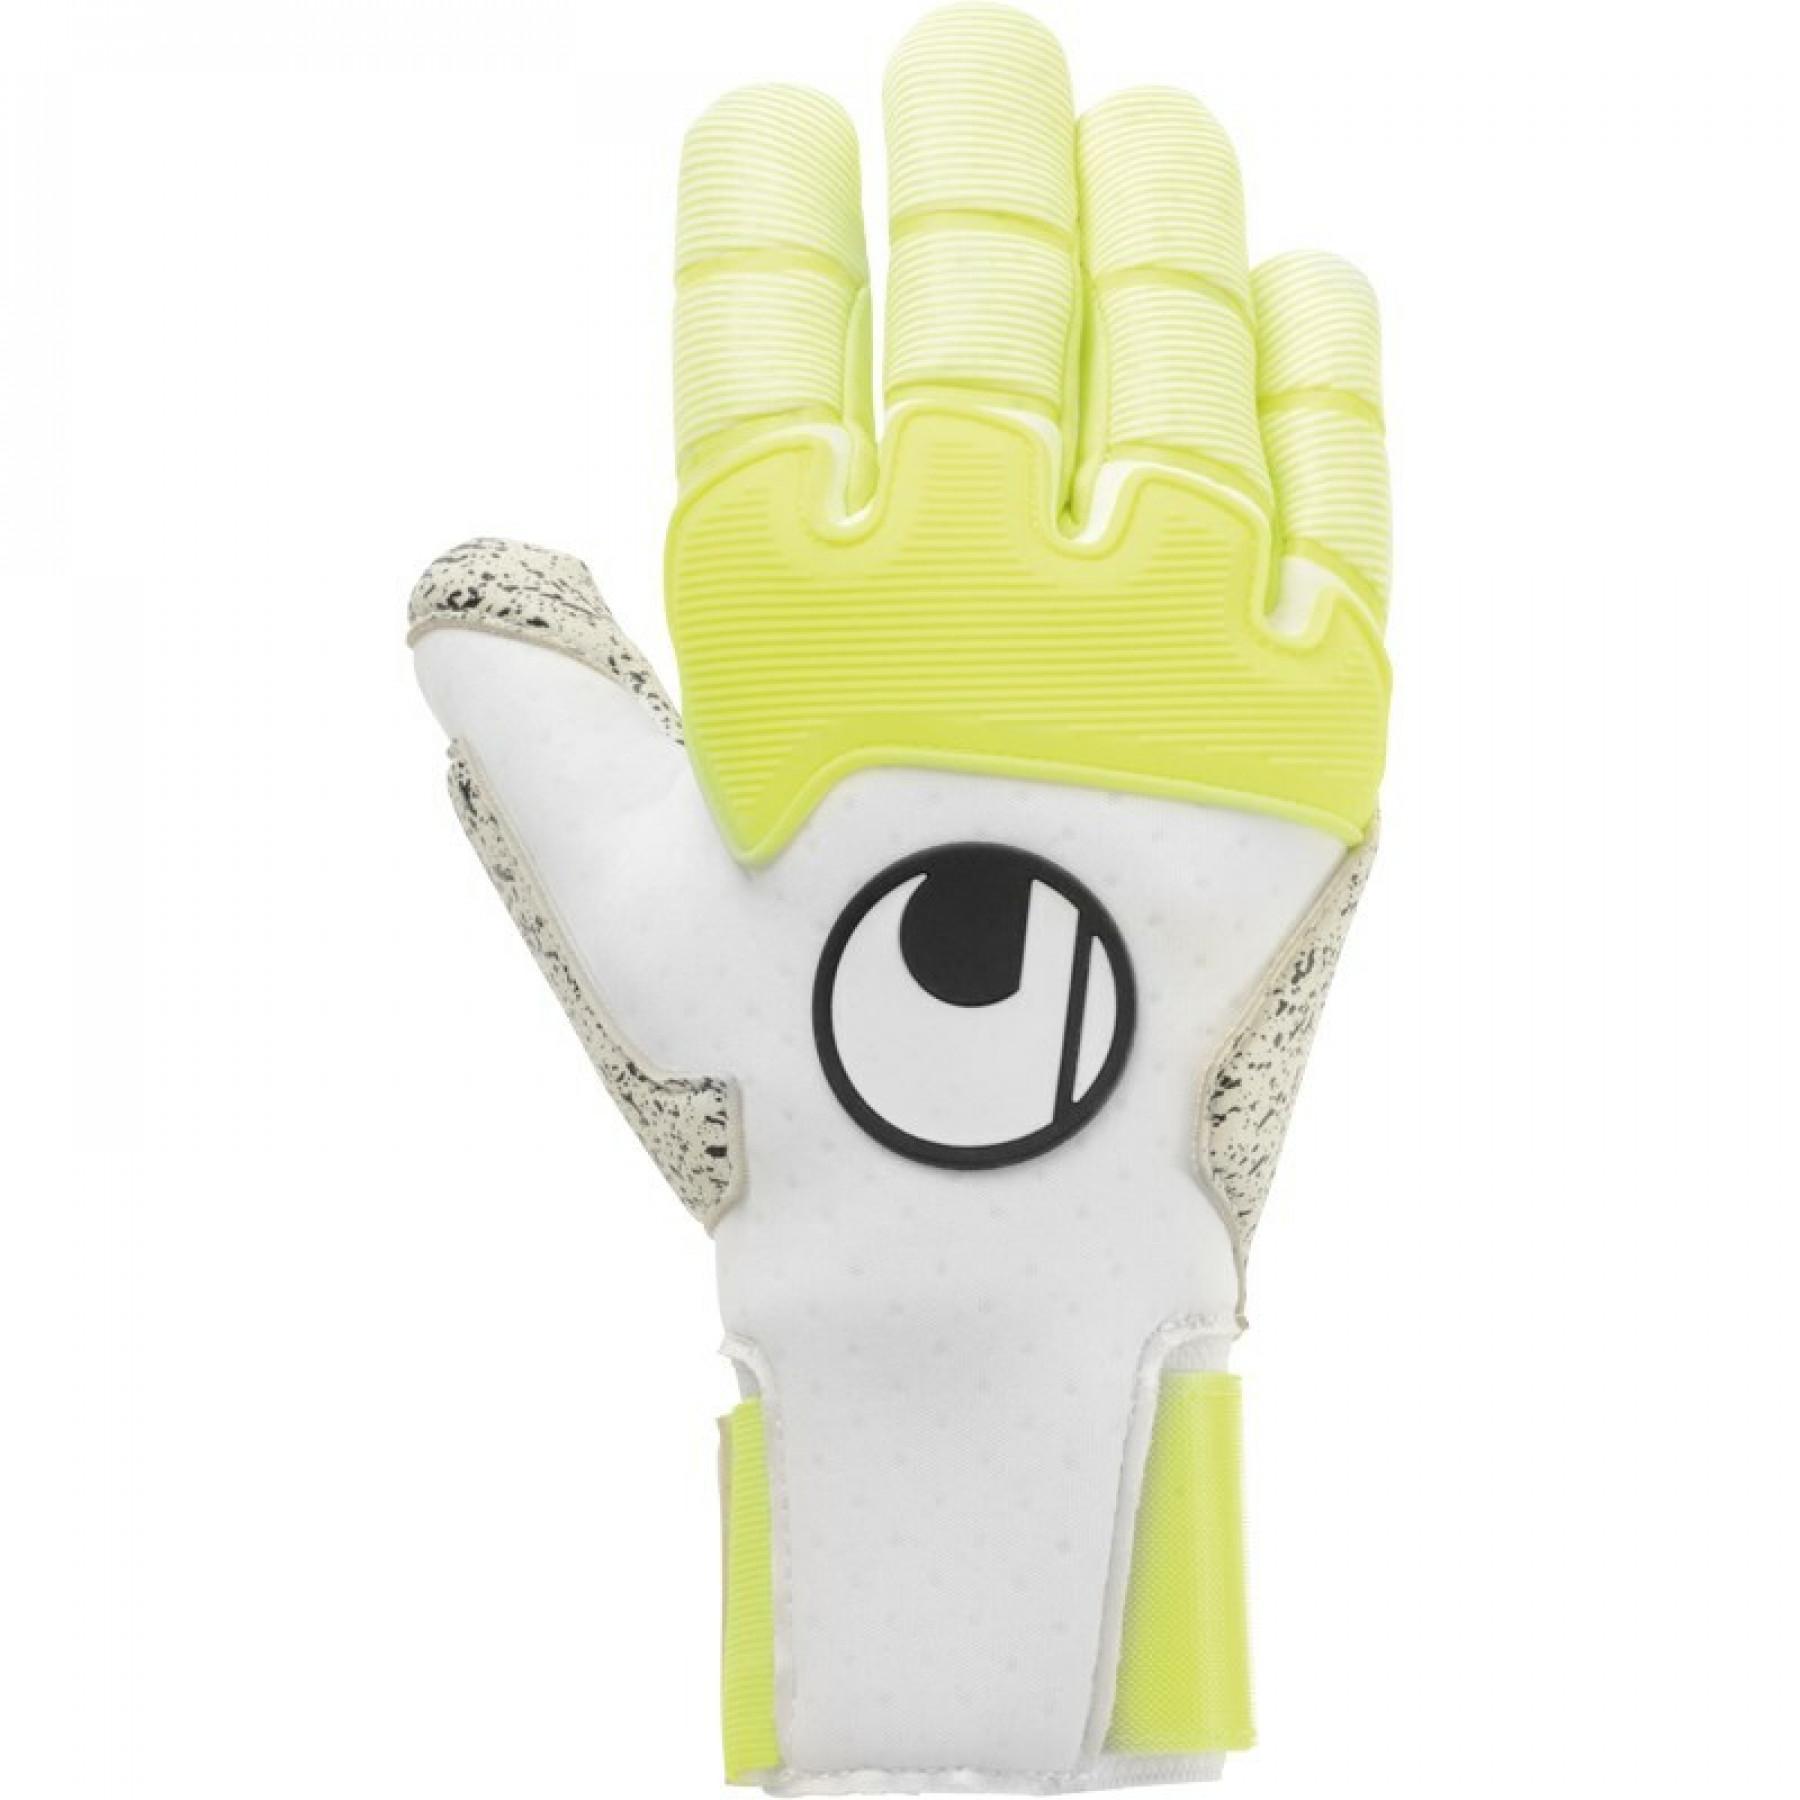 Goalkeeper gloves Uhlsport Pure alliance supergrip+ reflex